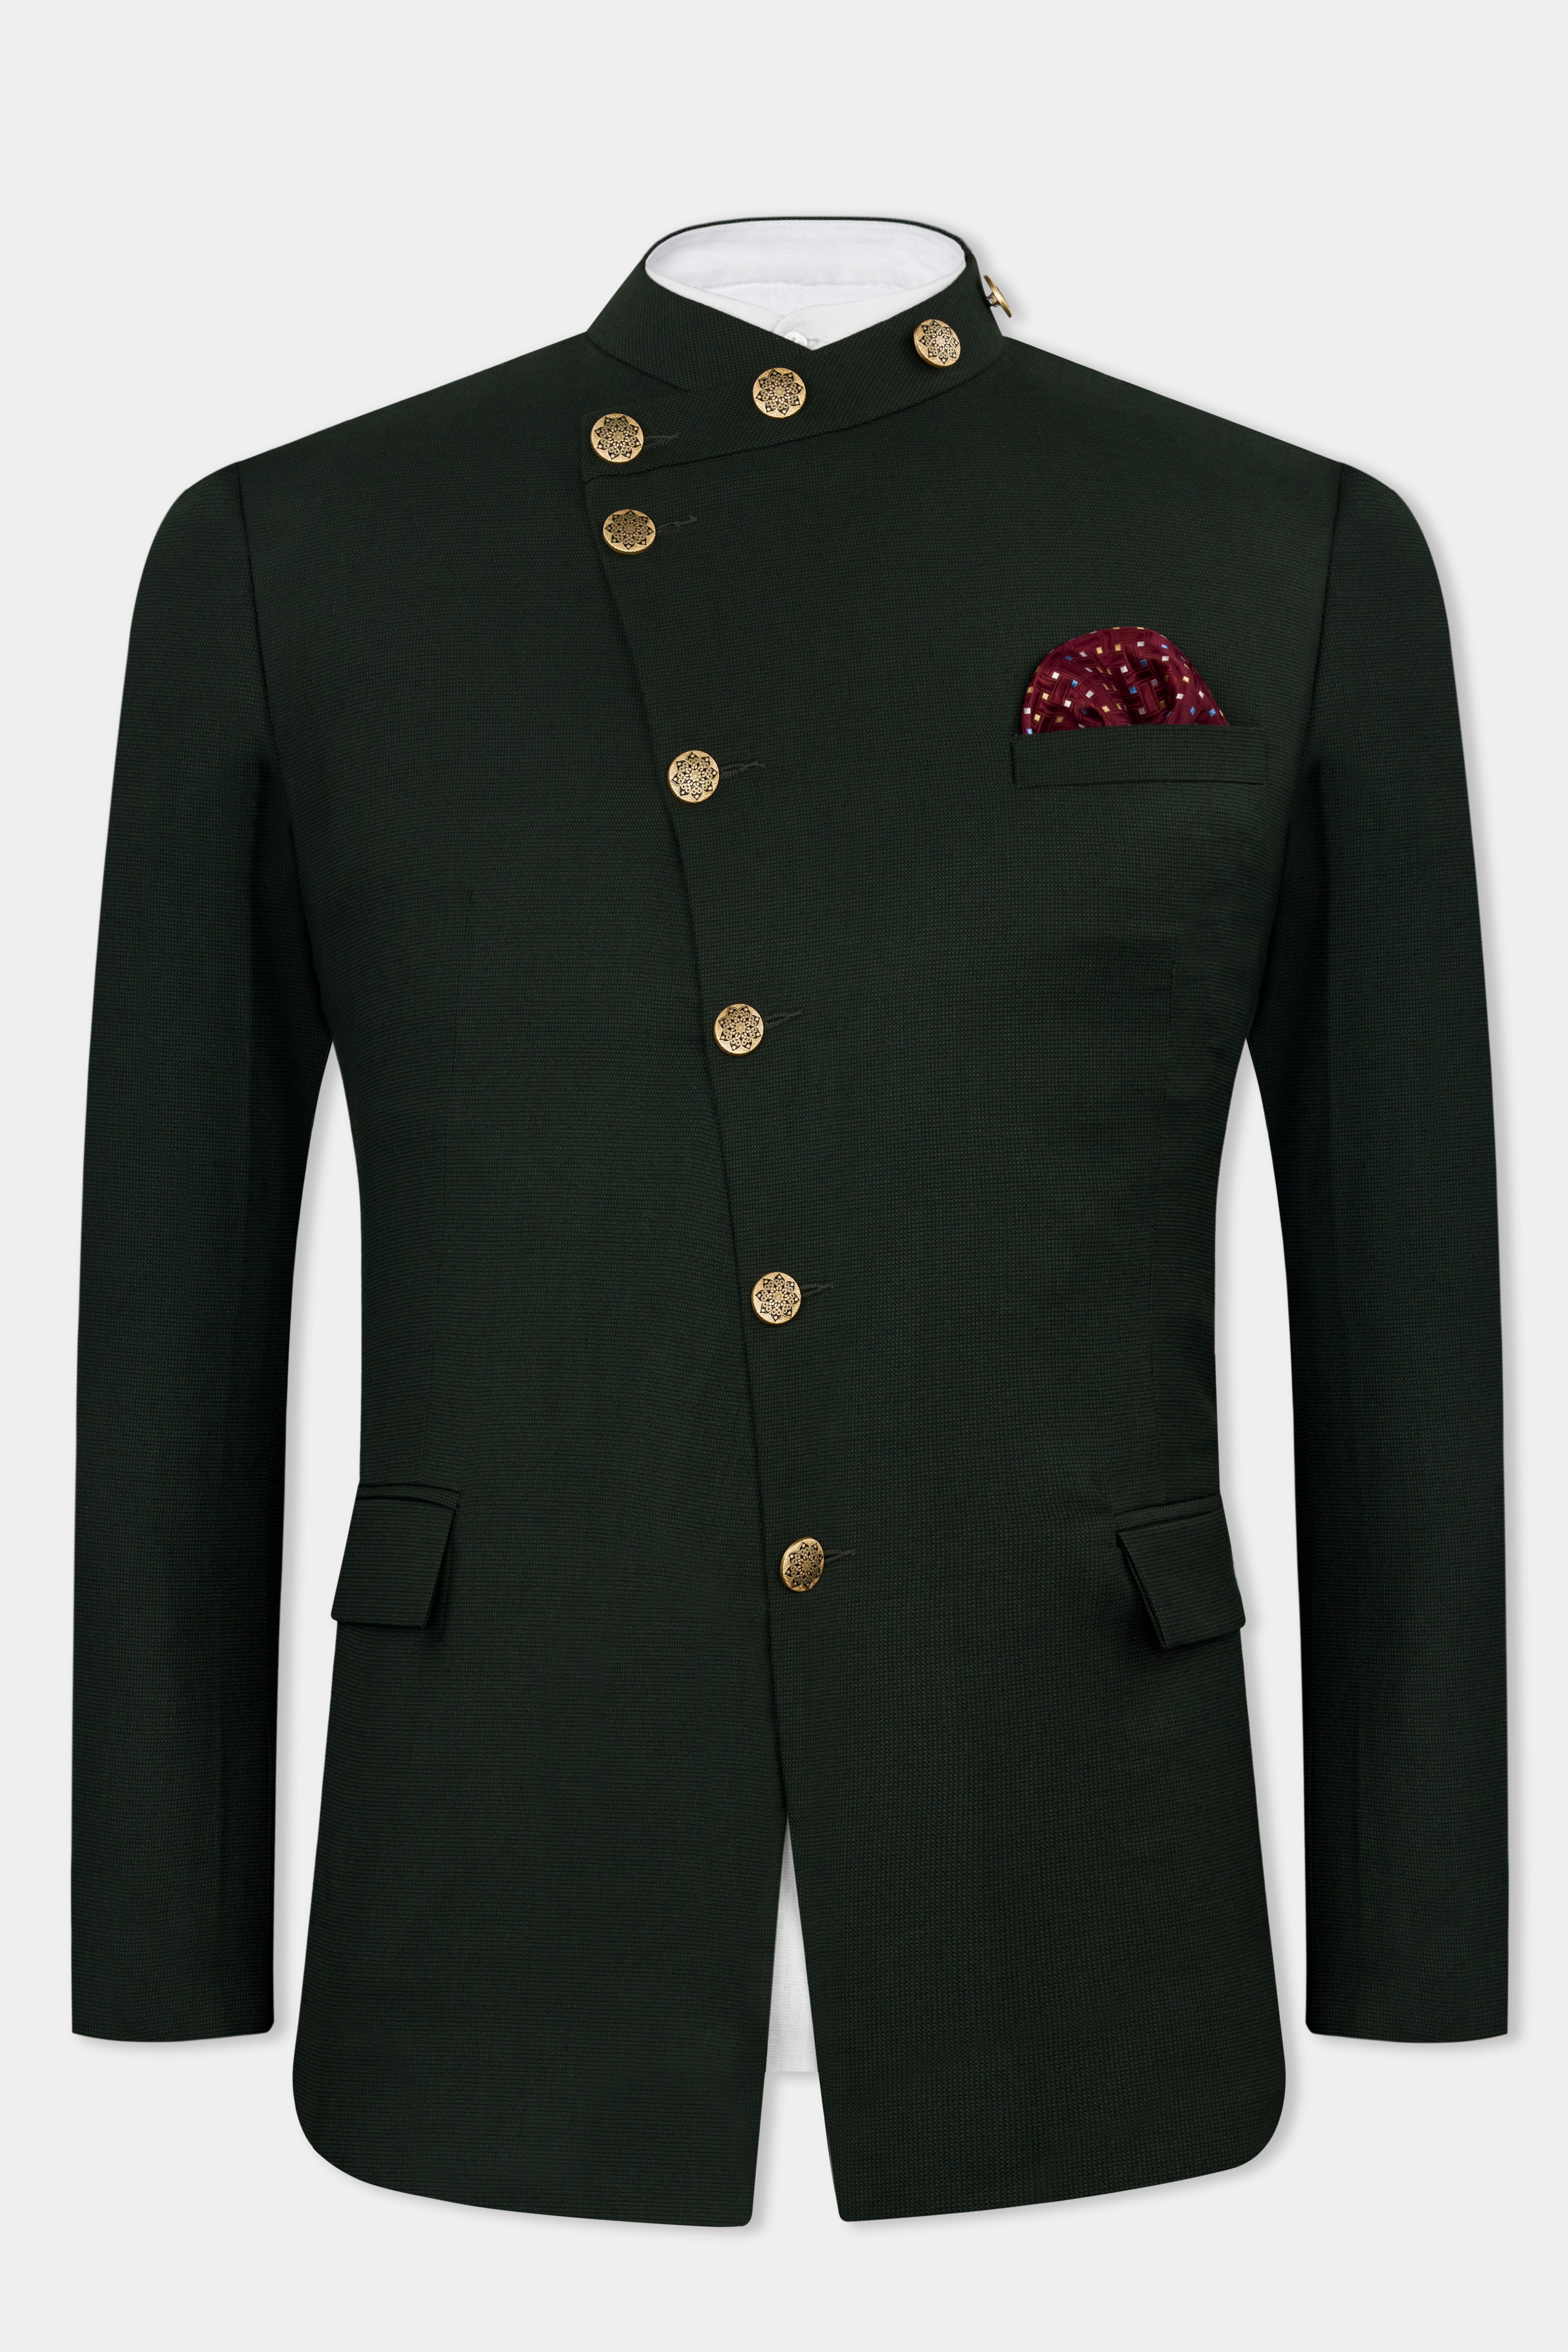 Dartmouth Green Wool Rich Cross Buttoned Bandhgala Designer Suit ST2822-D178-36, ST2822-D178-38, ST2822-D178-40, ST2822-D178-42, ST2822-D178-44, ST2822-D178-46, ST2822-D178-48, ST2822-D178-50, ST2822-D178-52, ST2822-D178-54, ST2822-D178-56, ST2822-D178-58, ST2822-D178-60